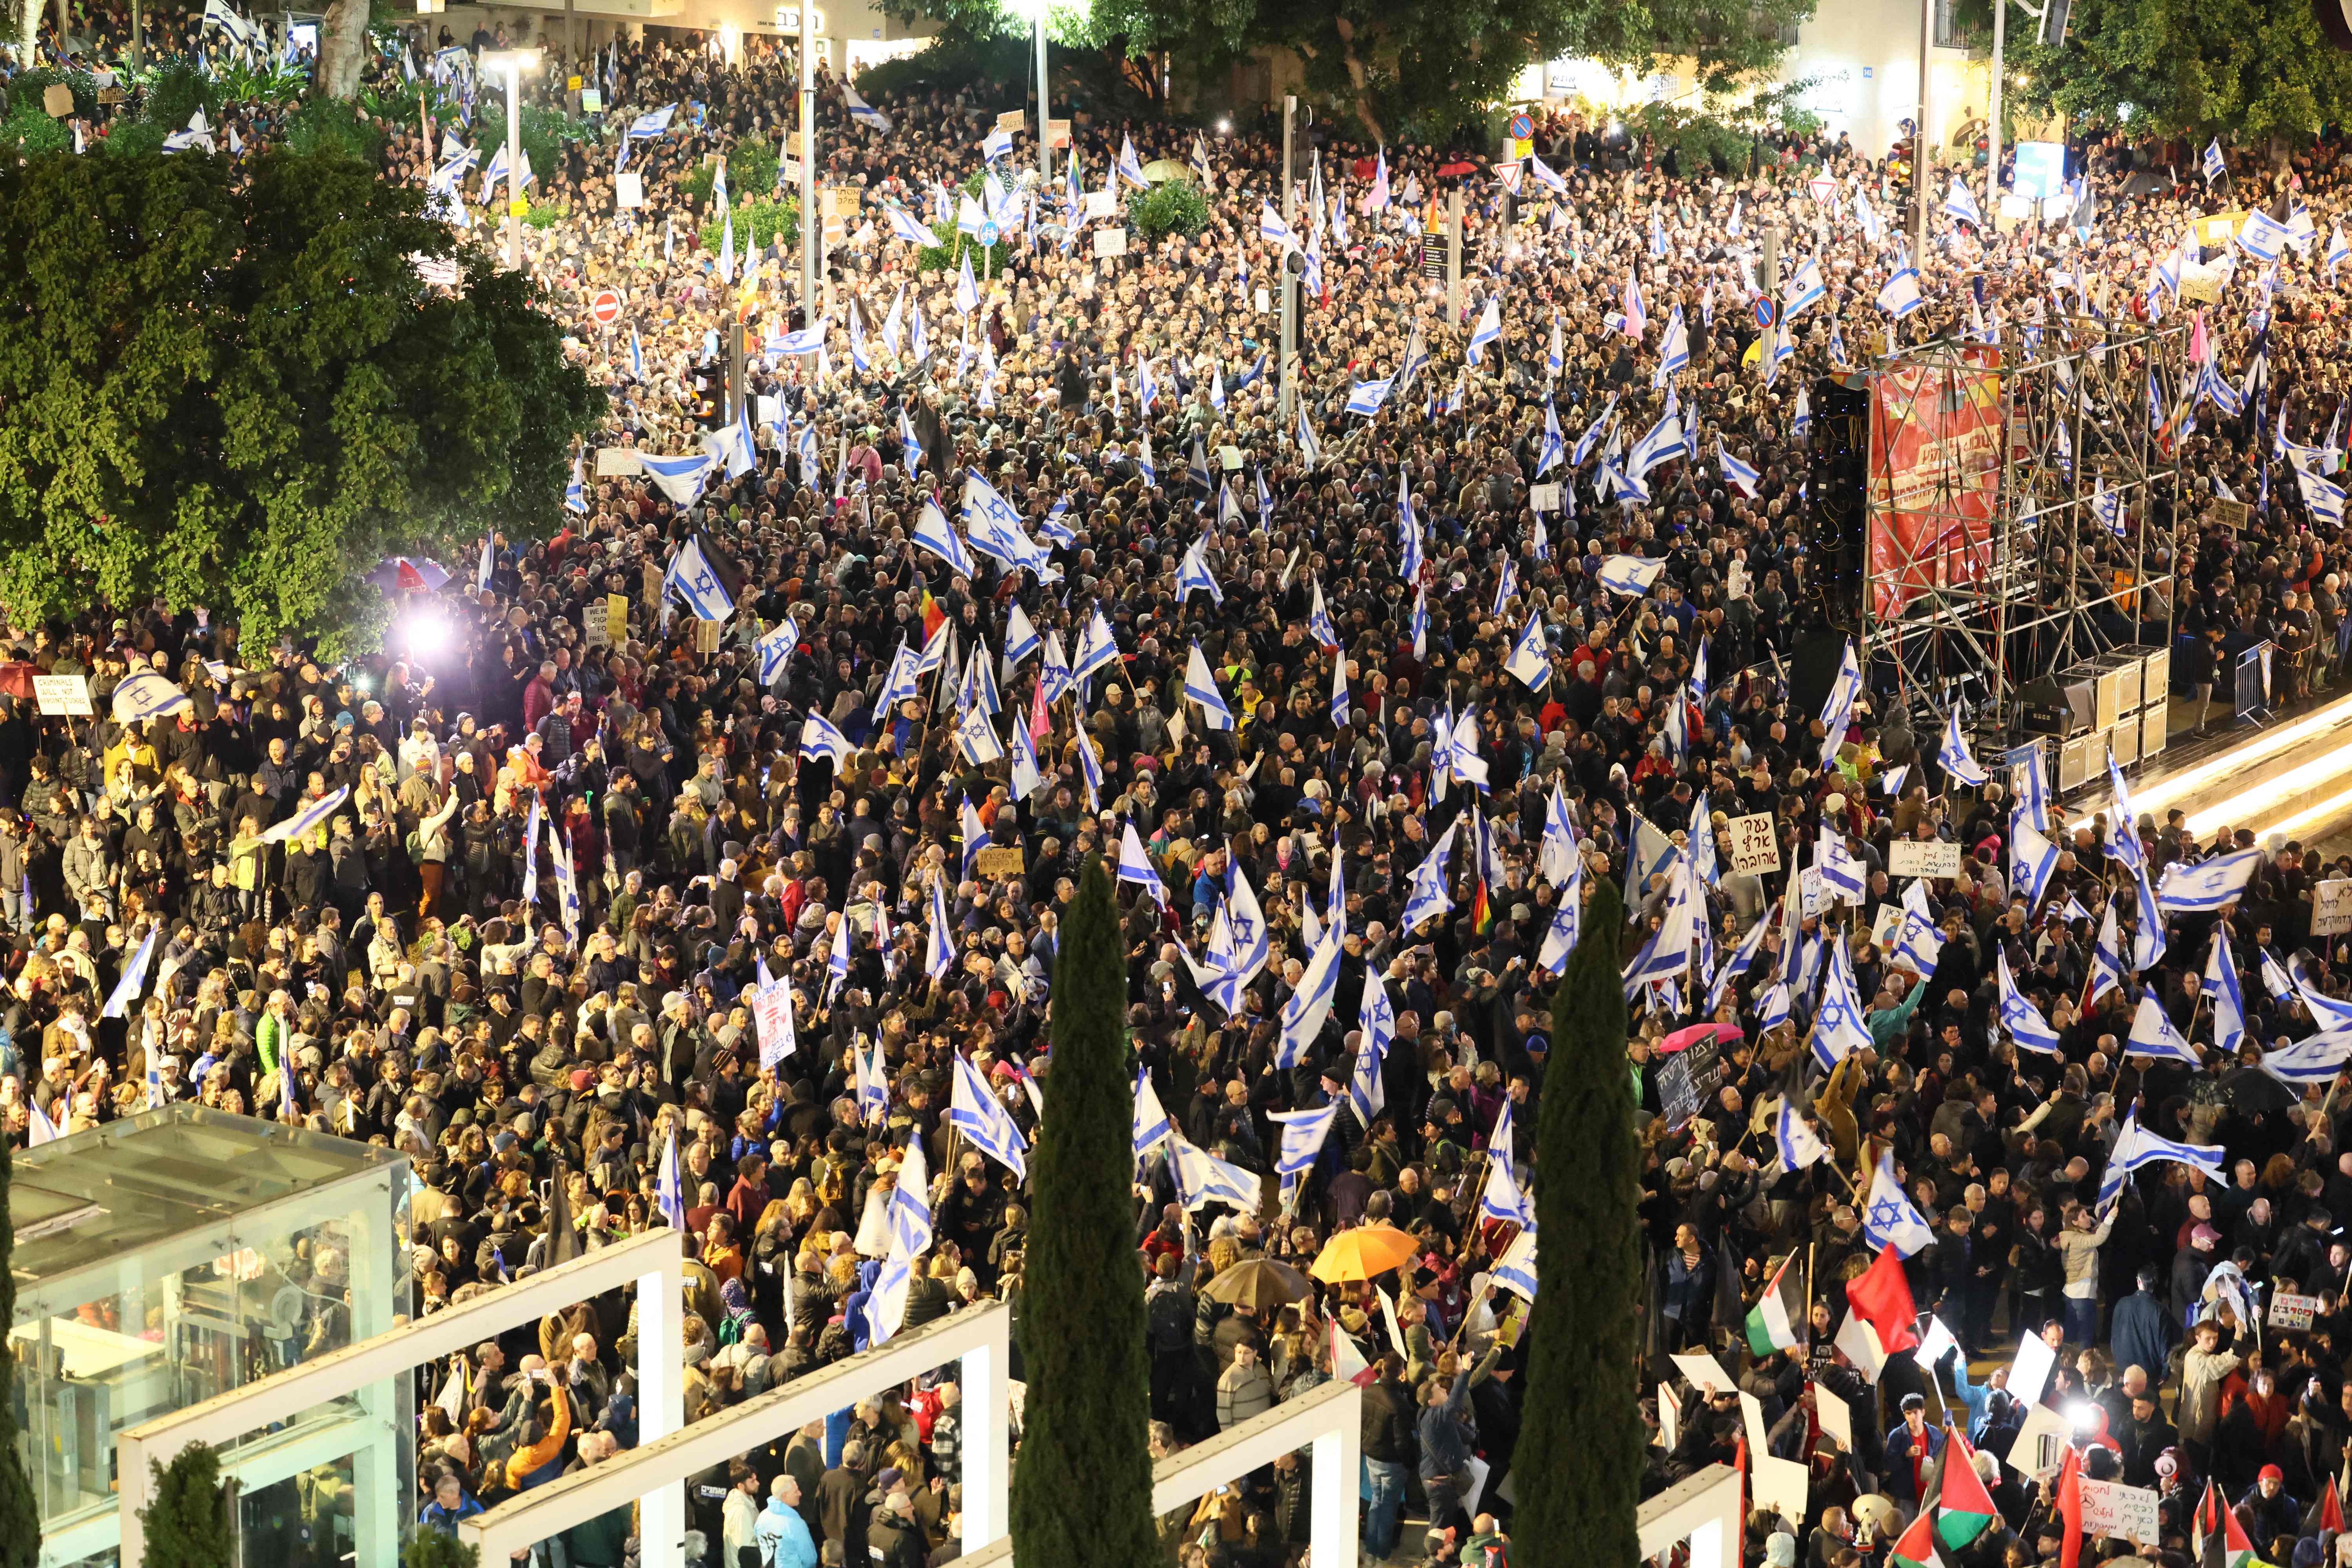 Rundt 80.000 mennesker deltok i demonstrasjonen i Tel Aviv lørdag, ifølge israelske medier.